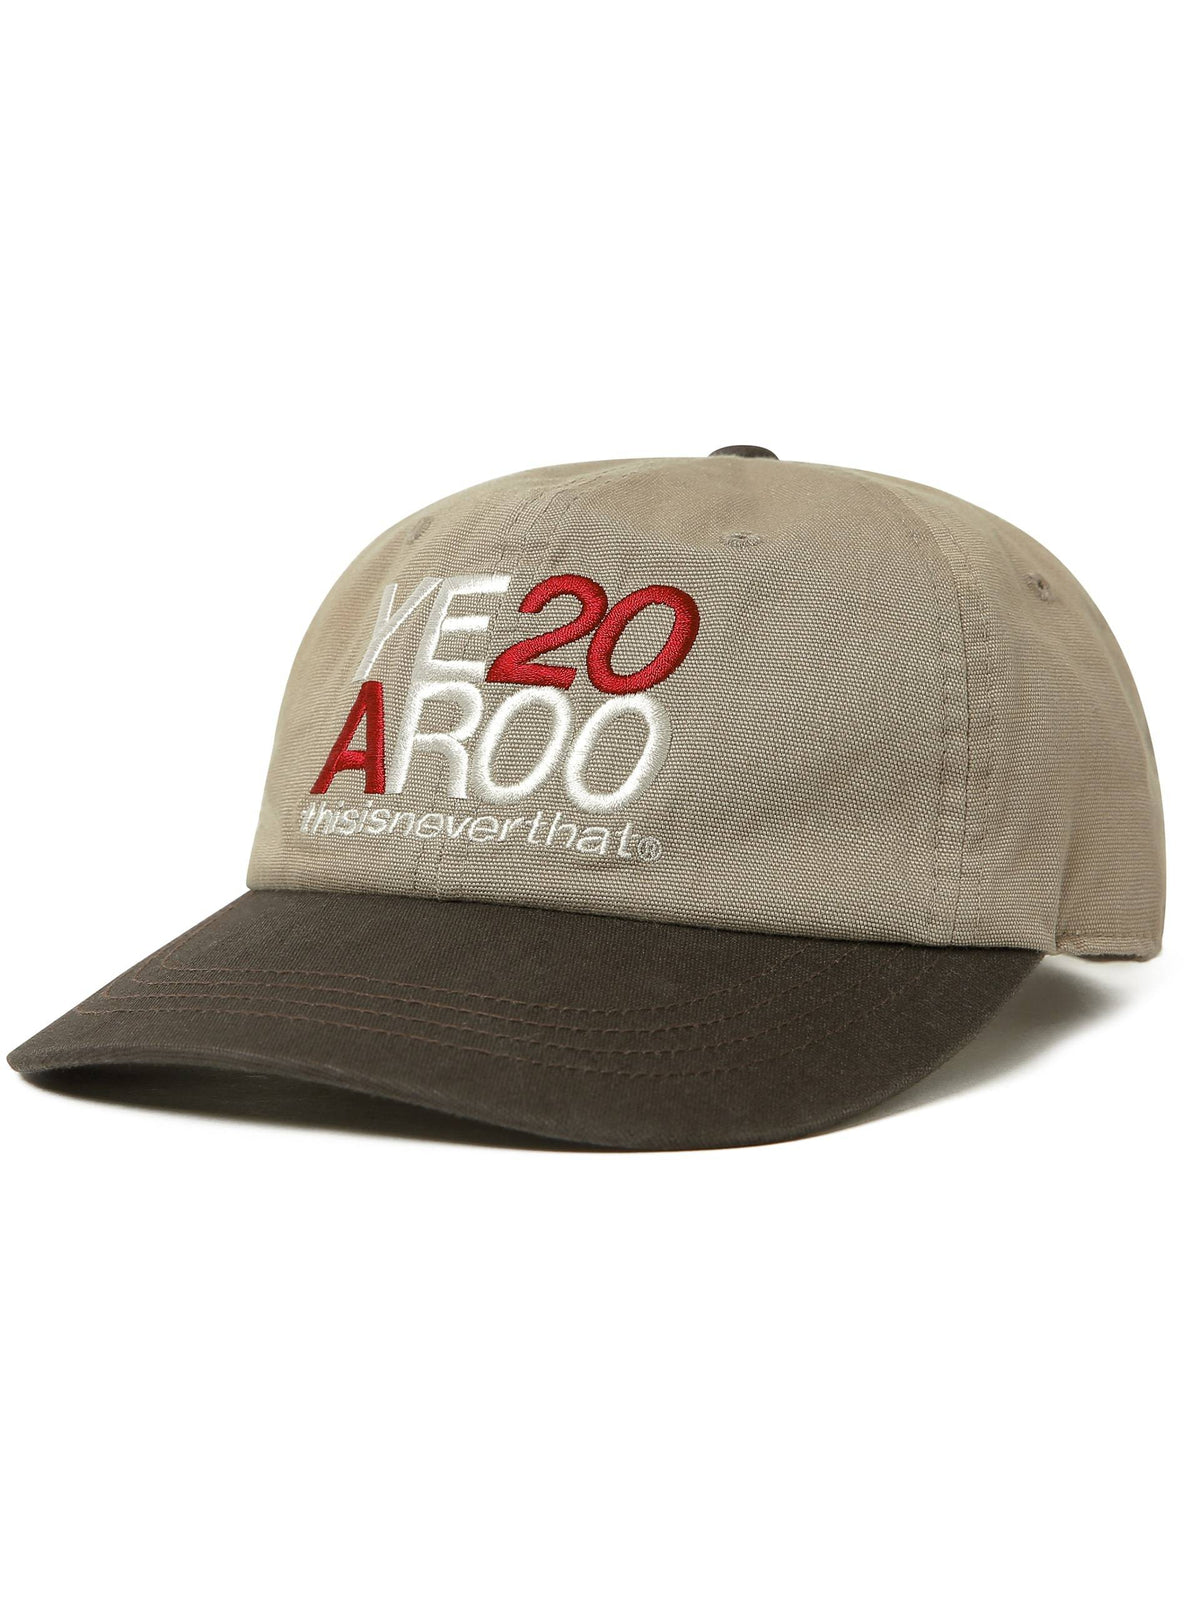 YEAR 2000 Cap Headwear 